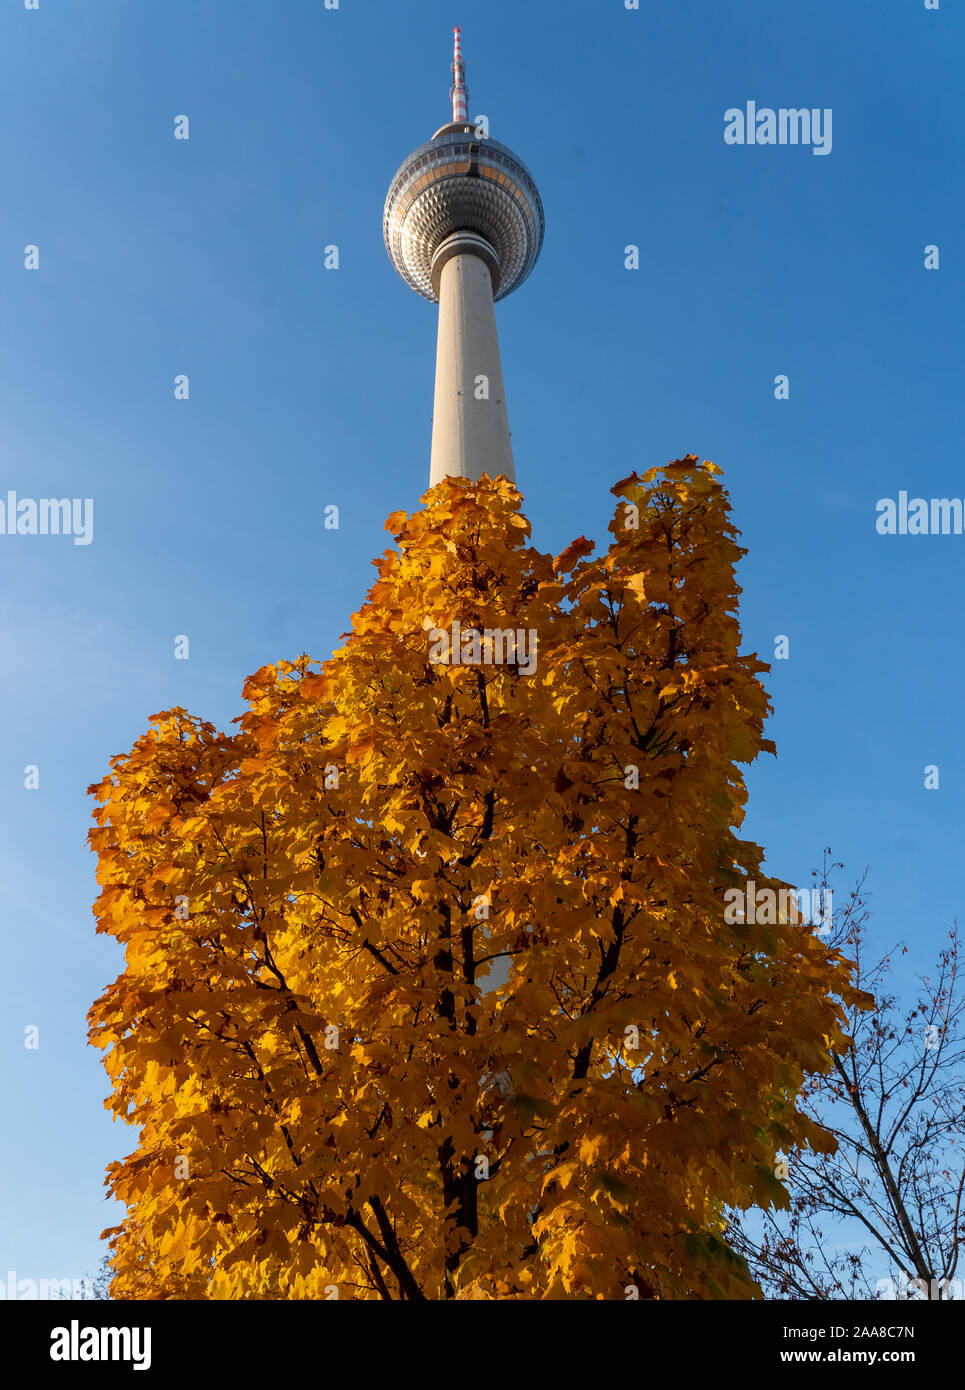 Der Berliner Fernsehturm (Fernsehturm) in Berlin. Aus einer Reihe von Fotos in Deutschland. Foto Datum: Donnerstag, 14. November 2019. Foto: Roge Stockfoto